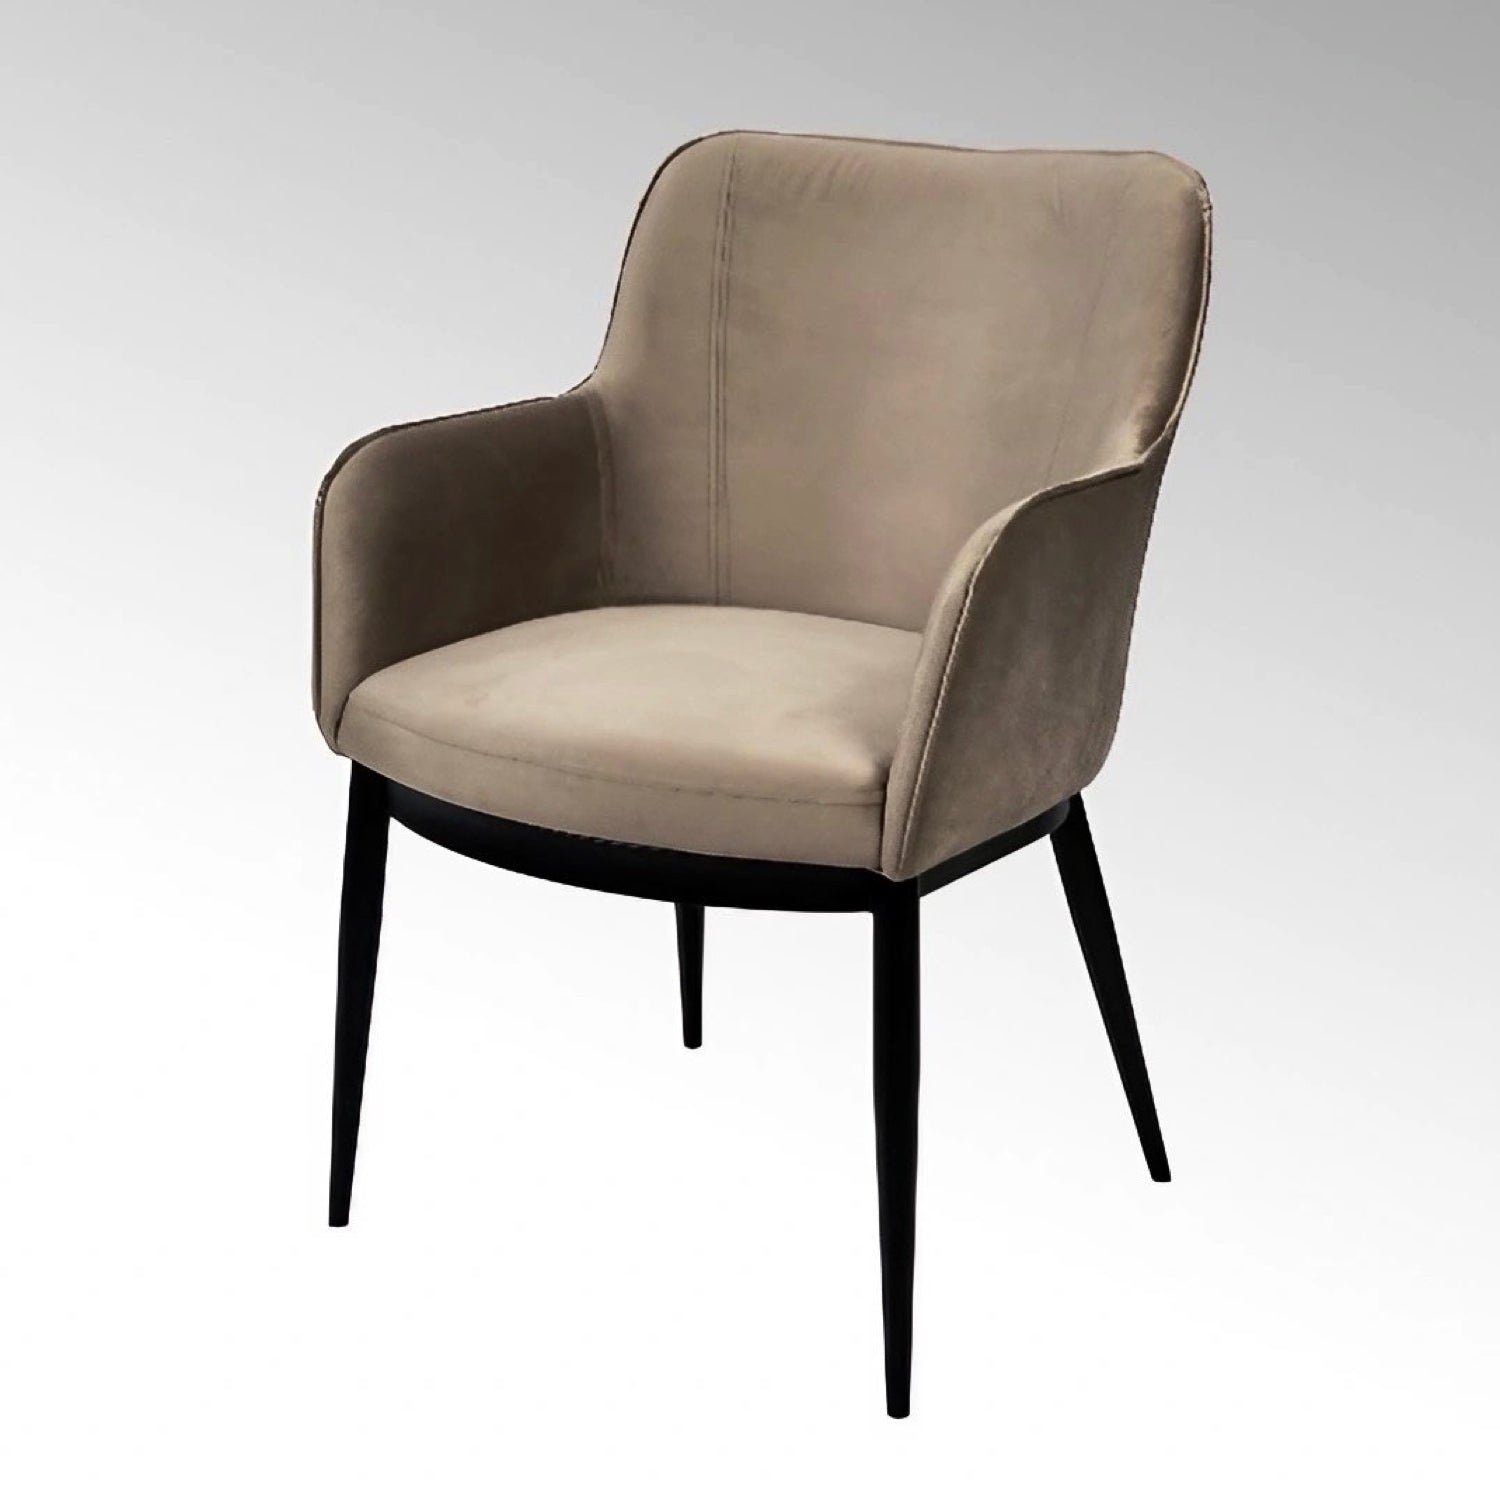 FELIX chair by Lambert